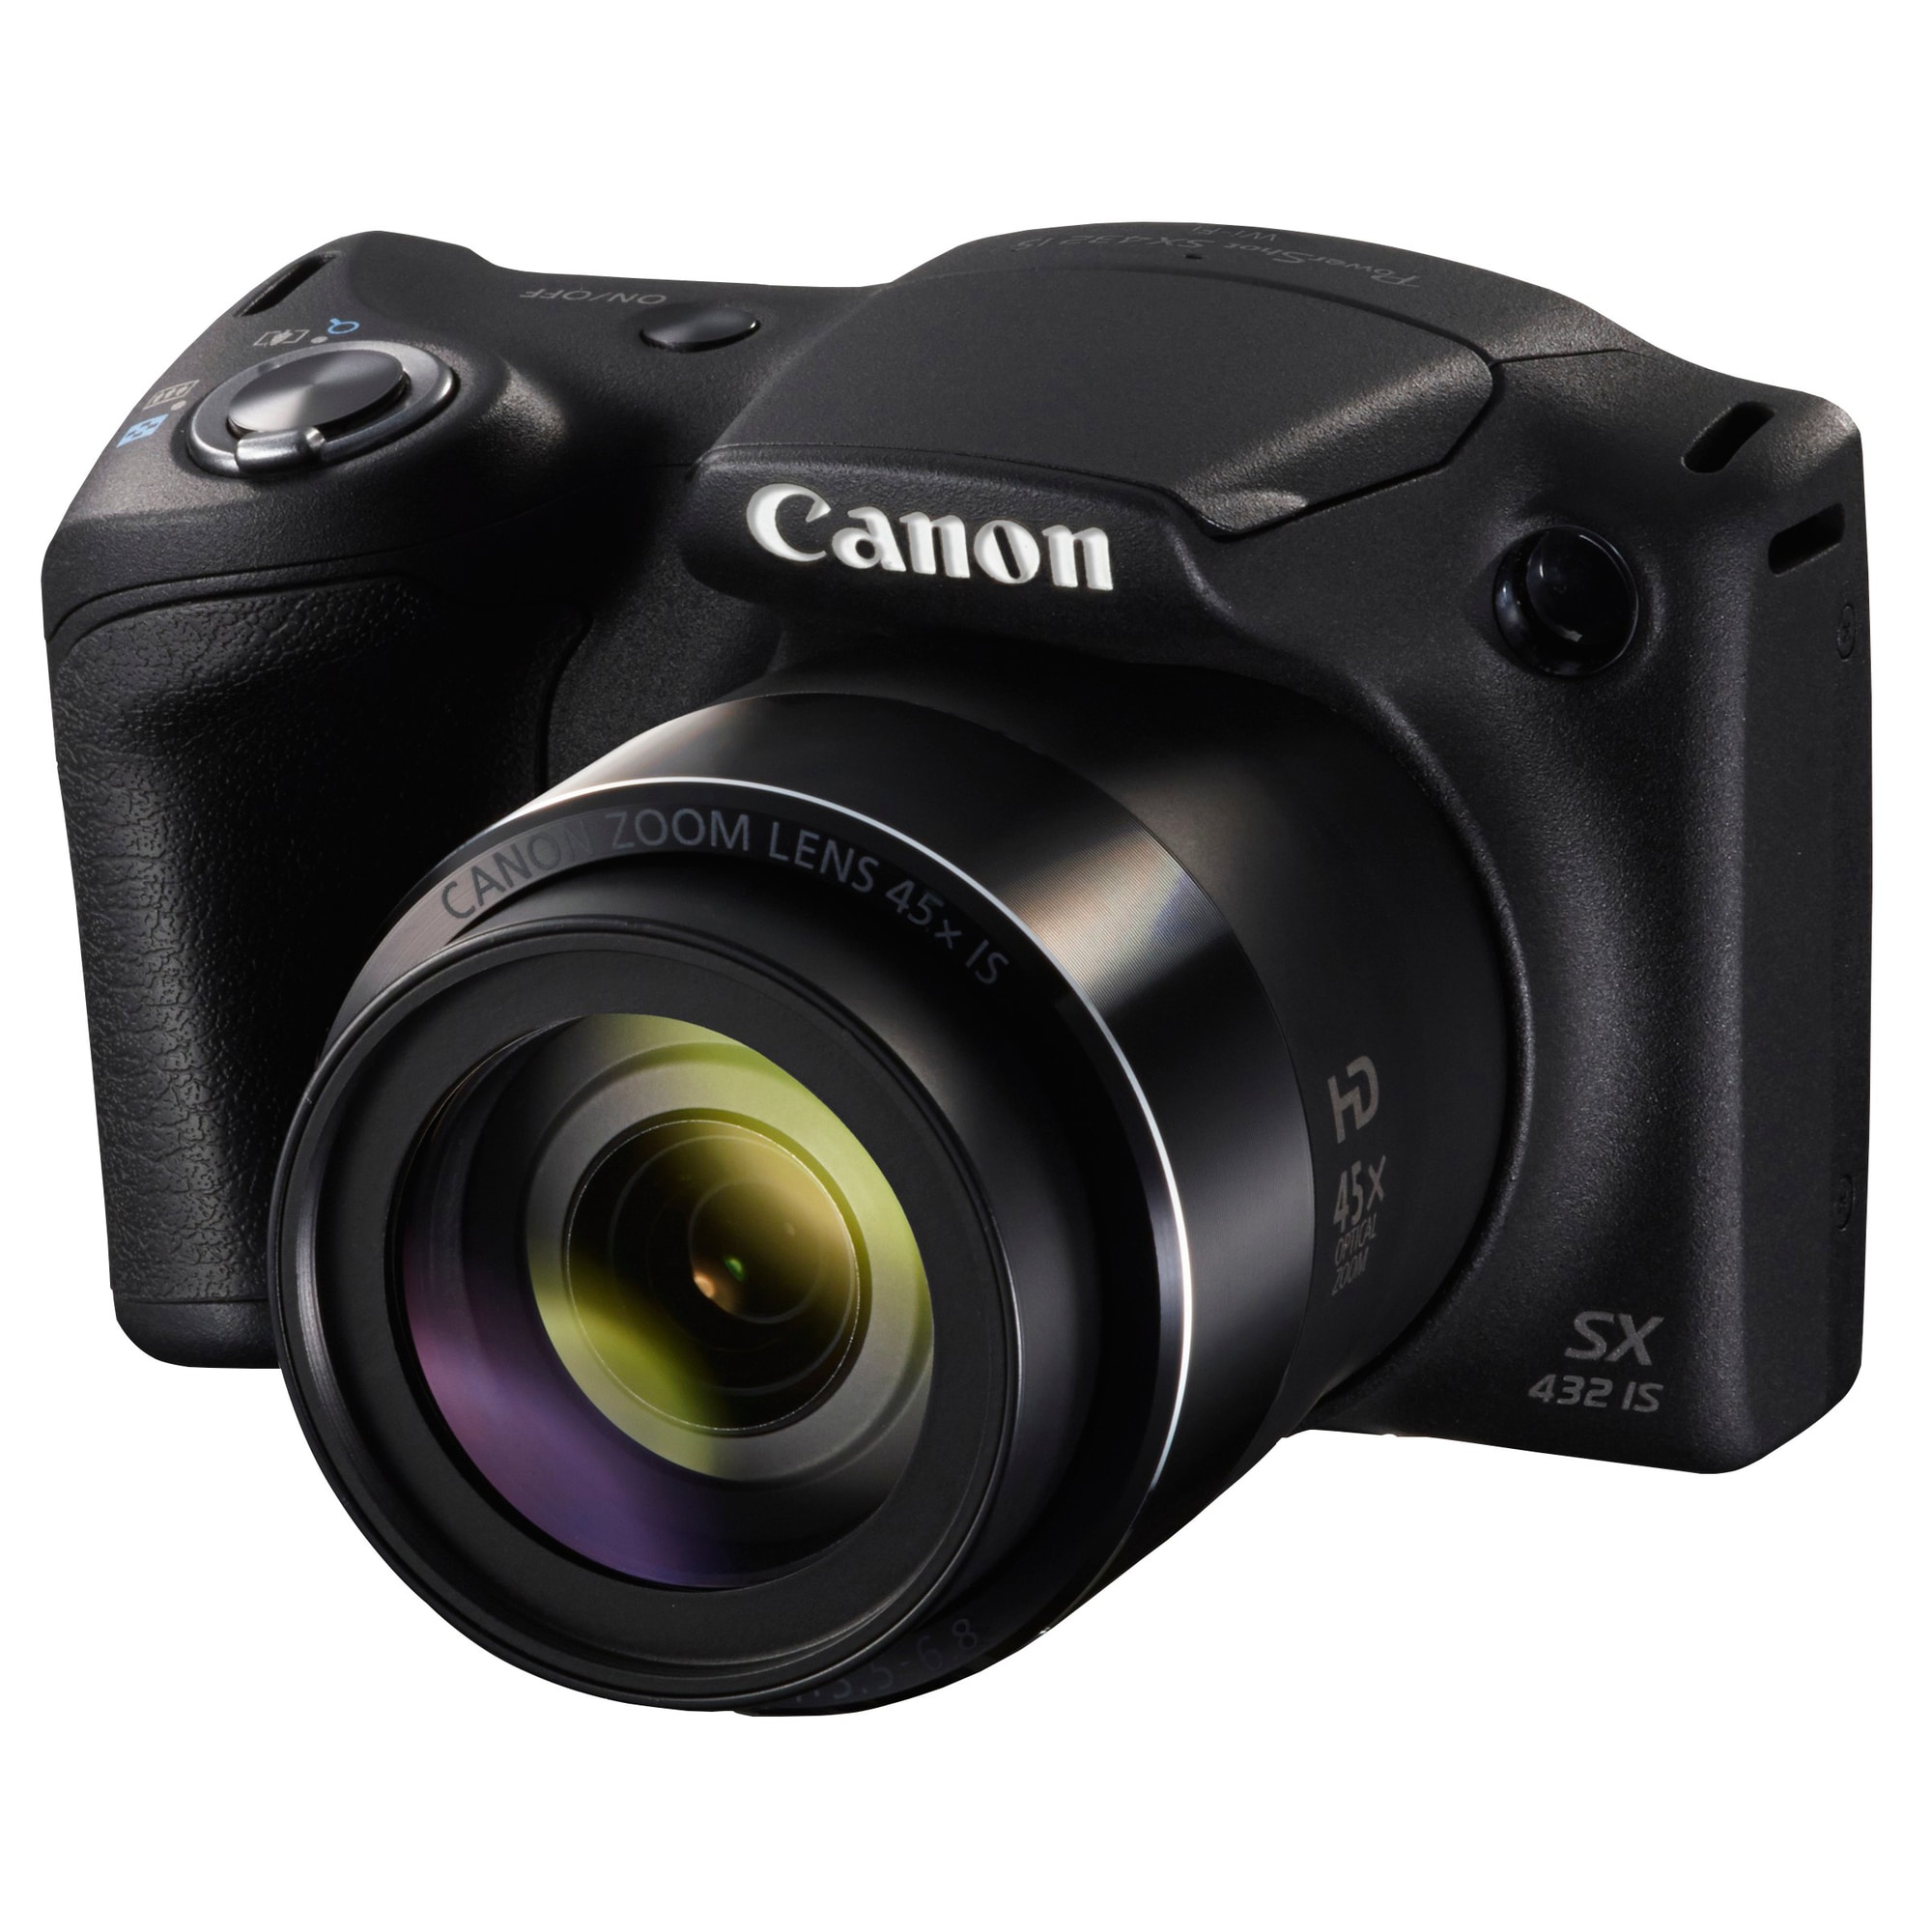 Canon PowerShot SX432 ultrazoom kamera - sort | Elgiganten